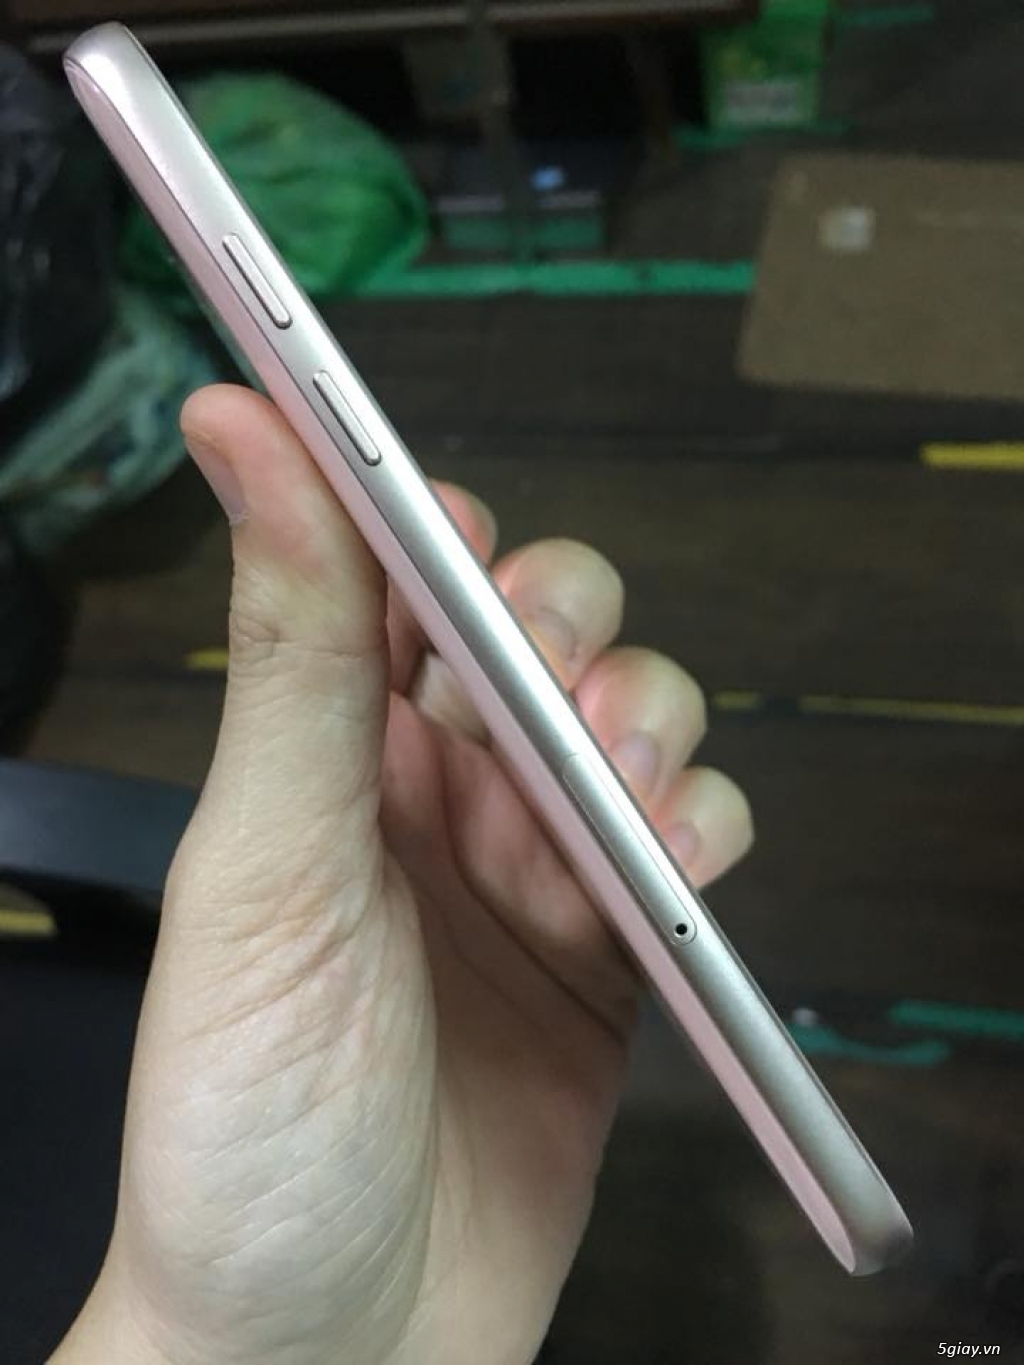 Samsung a5 2017 rose máy đẹp còn bảo hành - 4